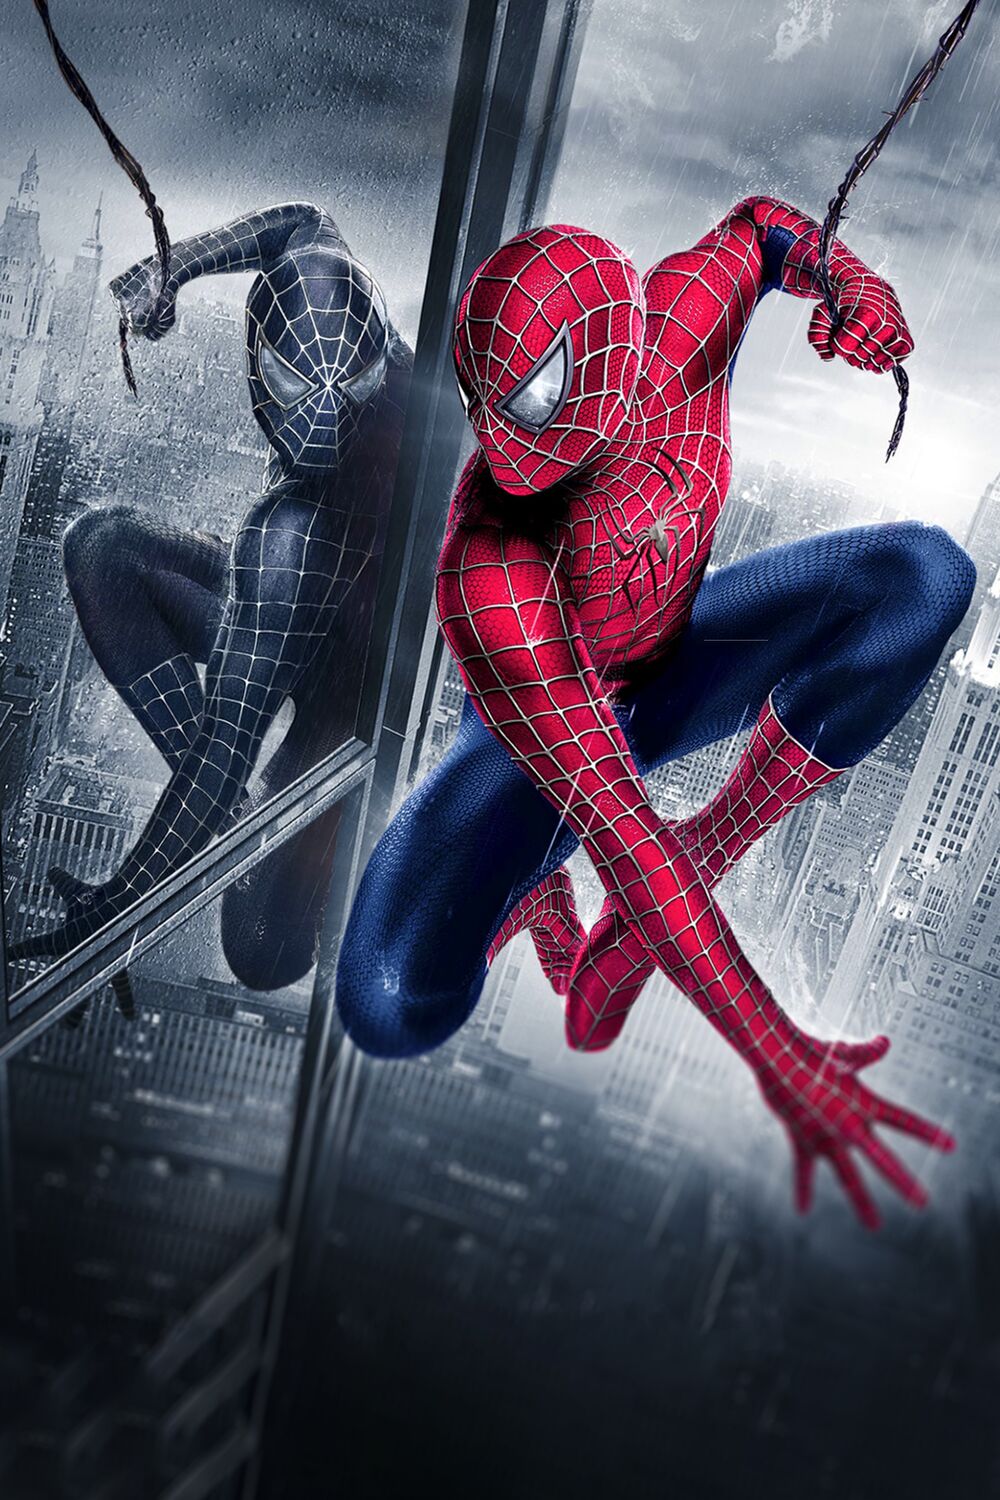 Spider-Man (Spider-Man Films) | Heroes and Villains Wiki | Fandom